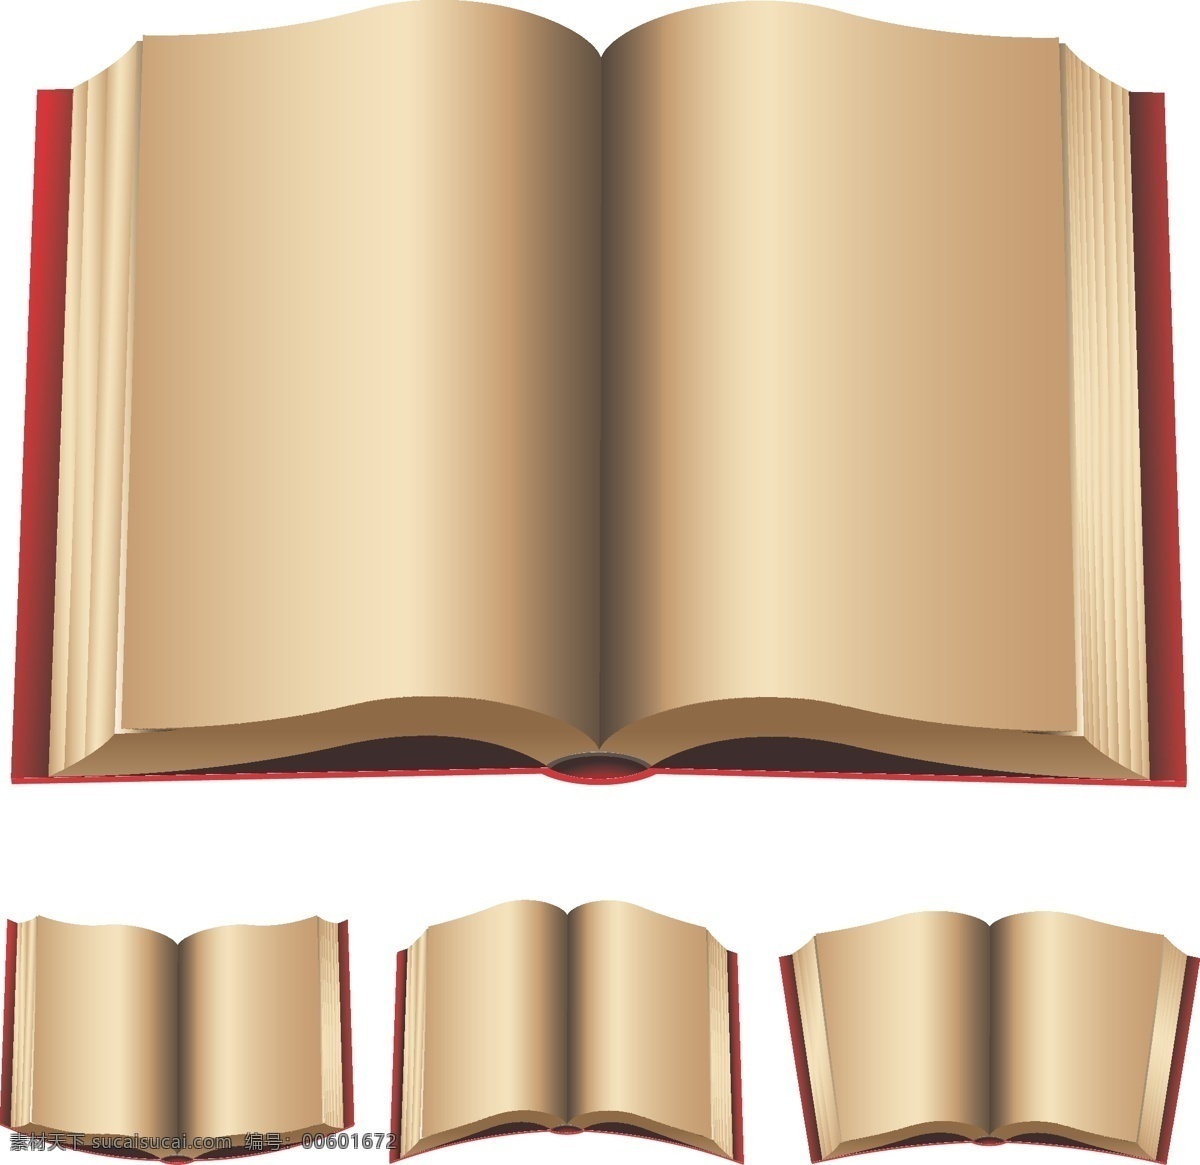 书本 书 模型 书本模型 教科书 书本设计 书本素材 学习用品 生活百科 矢量